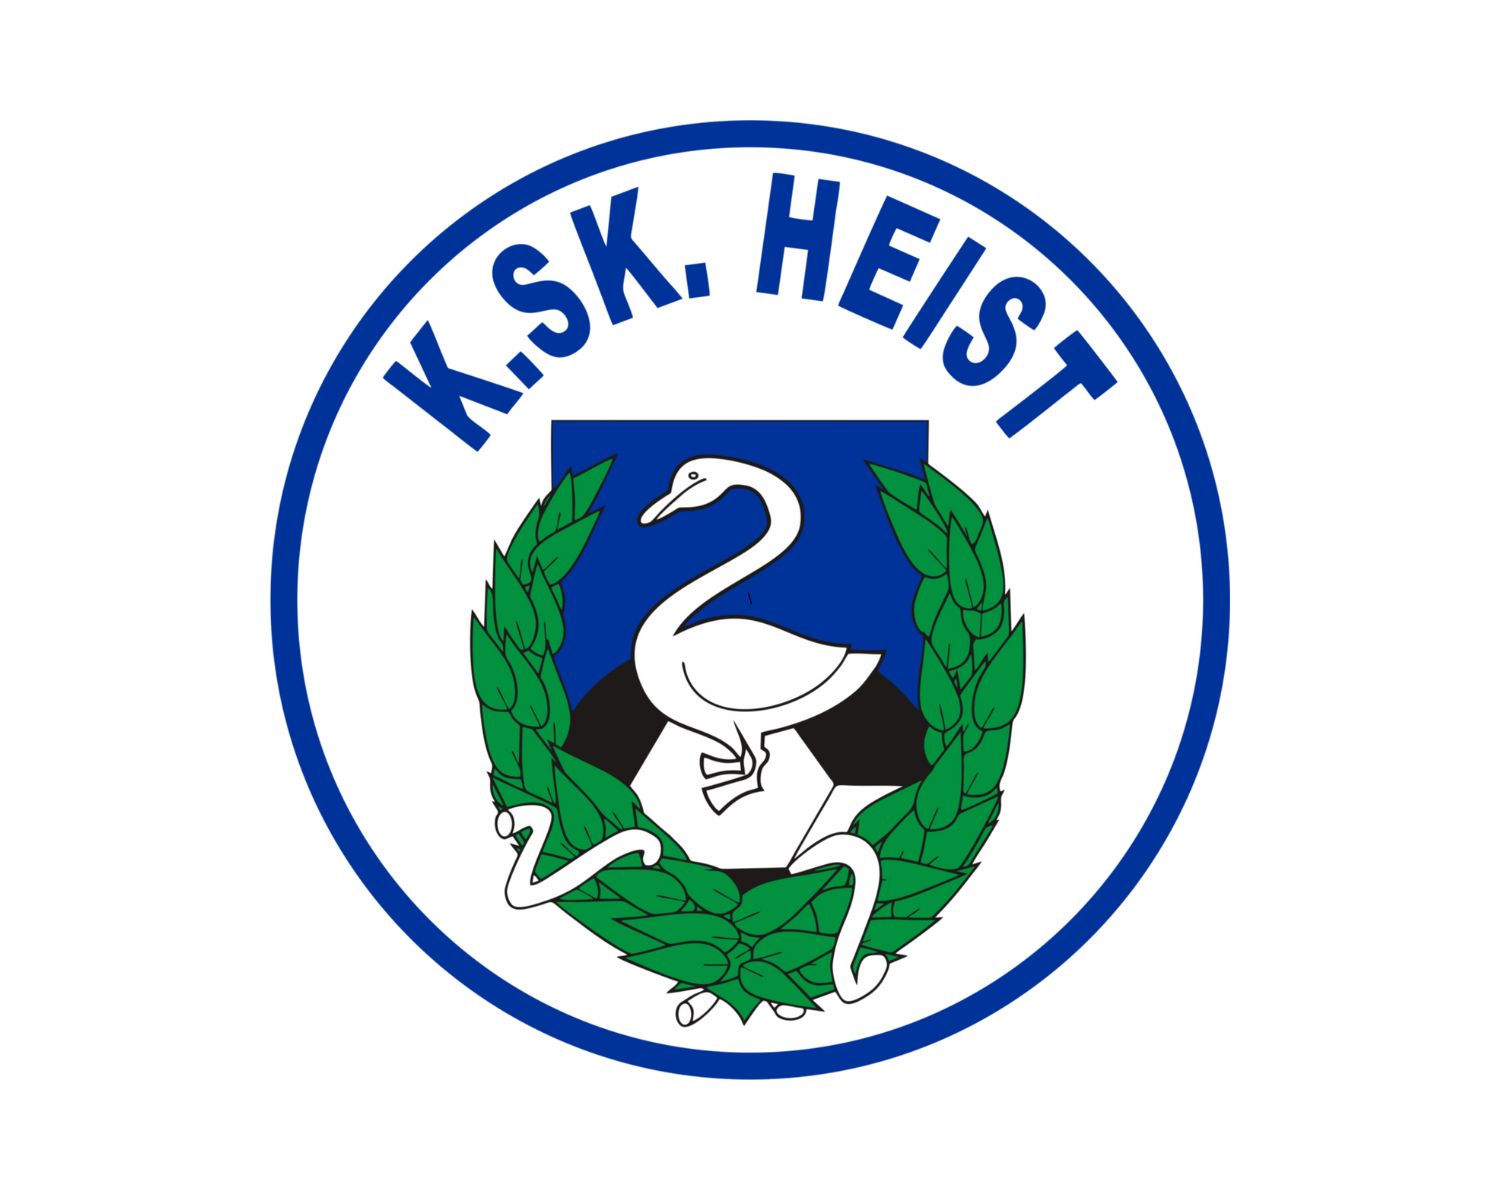 k-s-k-heist-13-football-club-facts